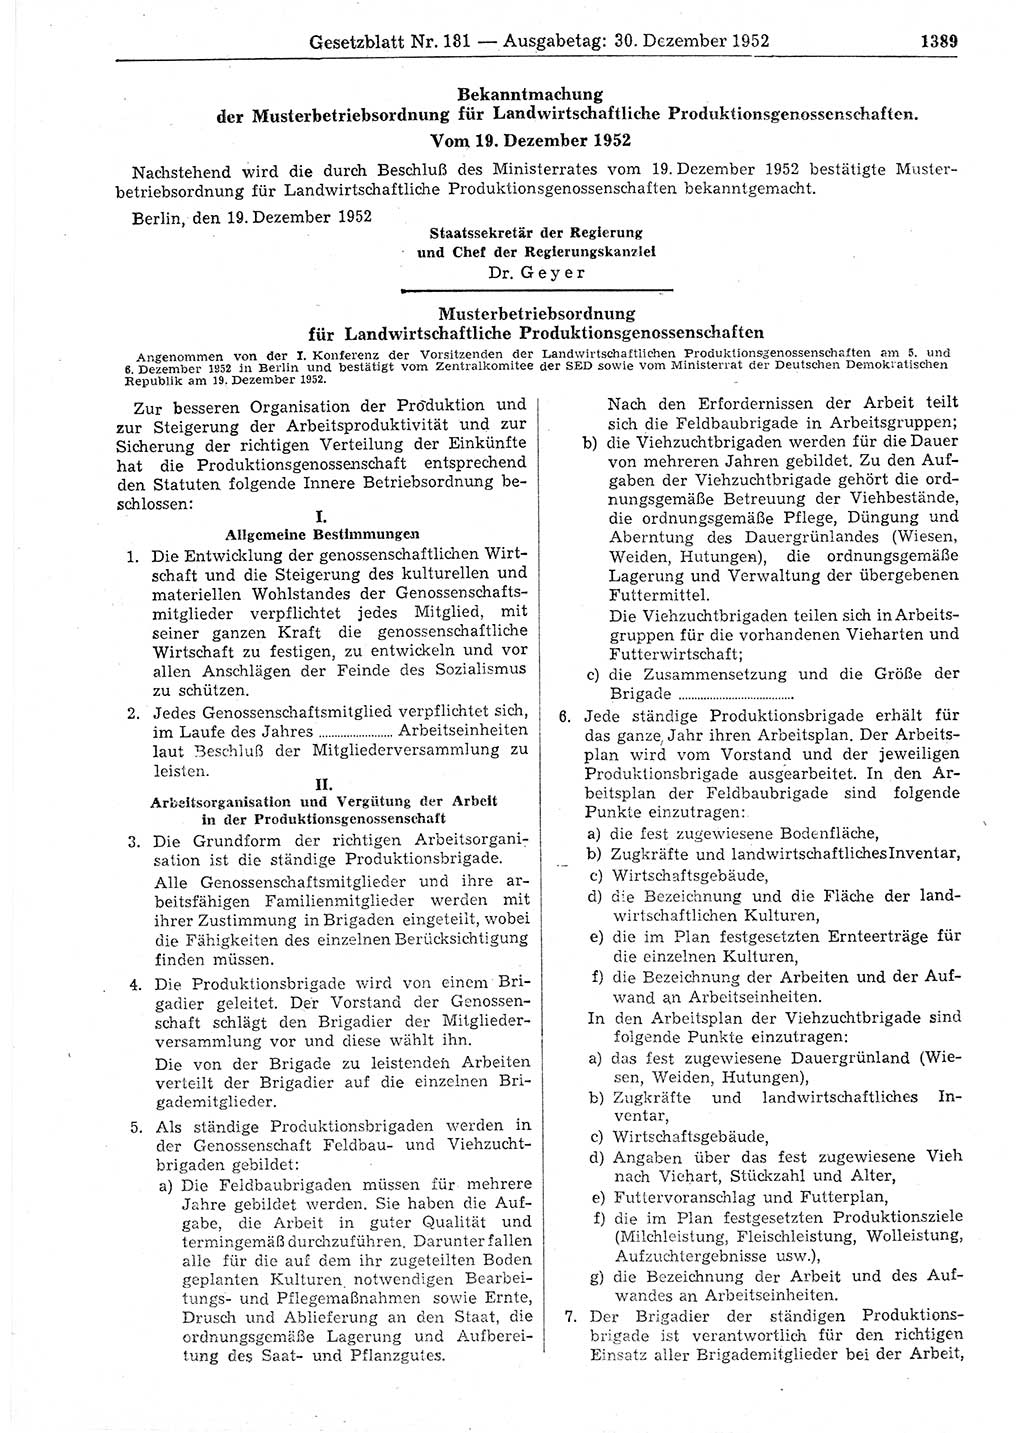 Gesetzblatt (GBl.) der Deutschen Demokratischen Republik (DDR) 1952, Seite 1389 (GBl. DDR 1952, S. 1389)